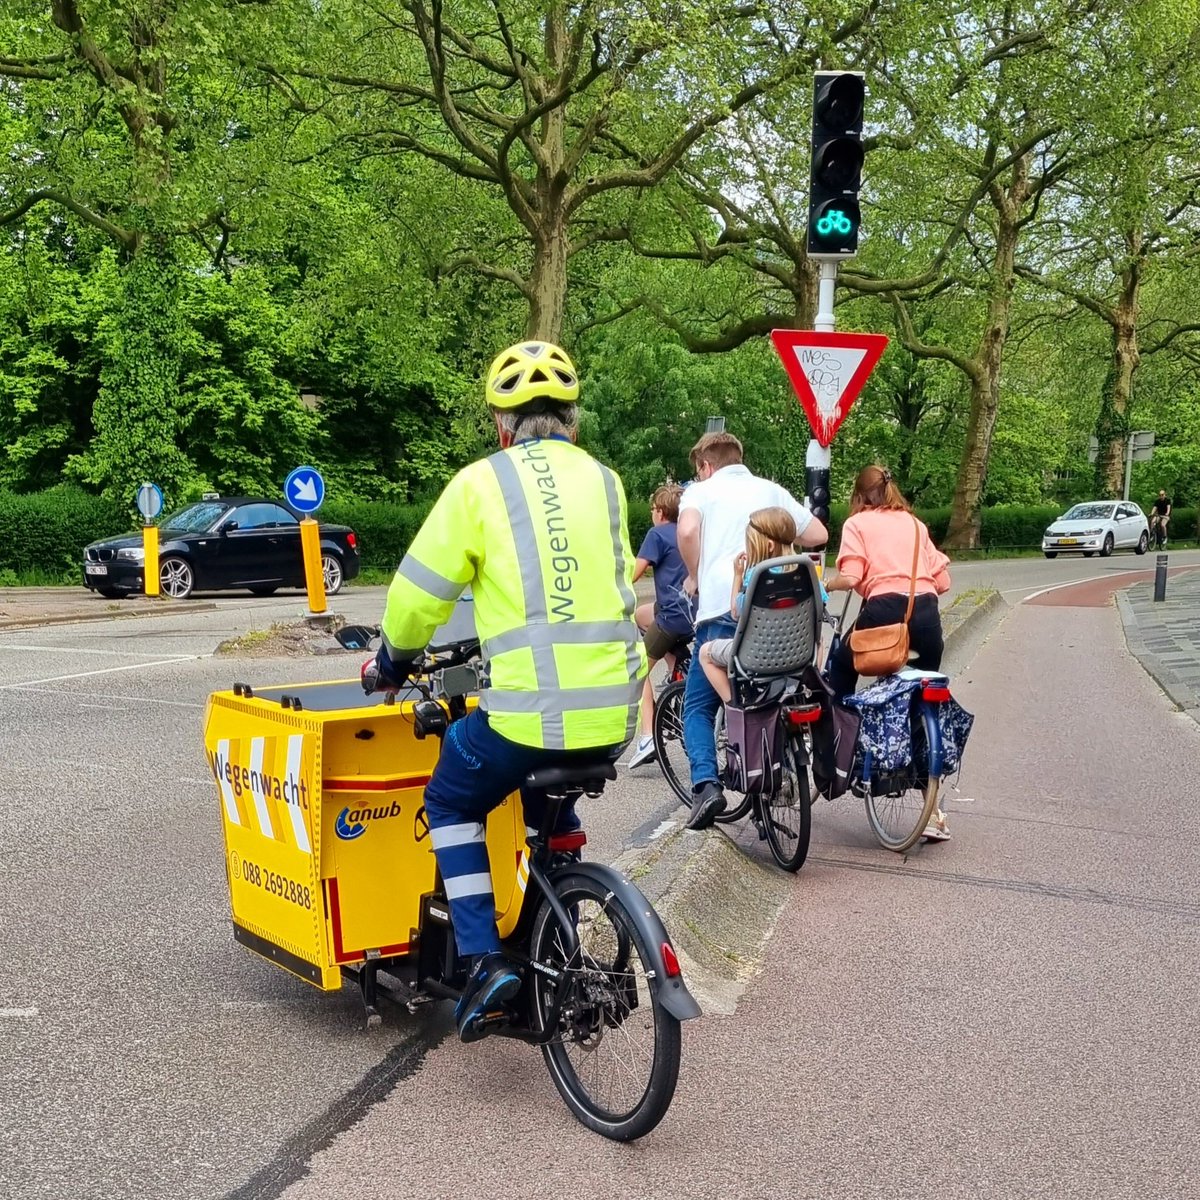 Ist das genial. Der niederländische ADAC kommt einfach mit dem Lastenrad zur Pannenstelle😍❤️
Foto von @FilmendeFietser